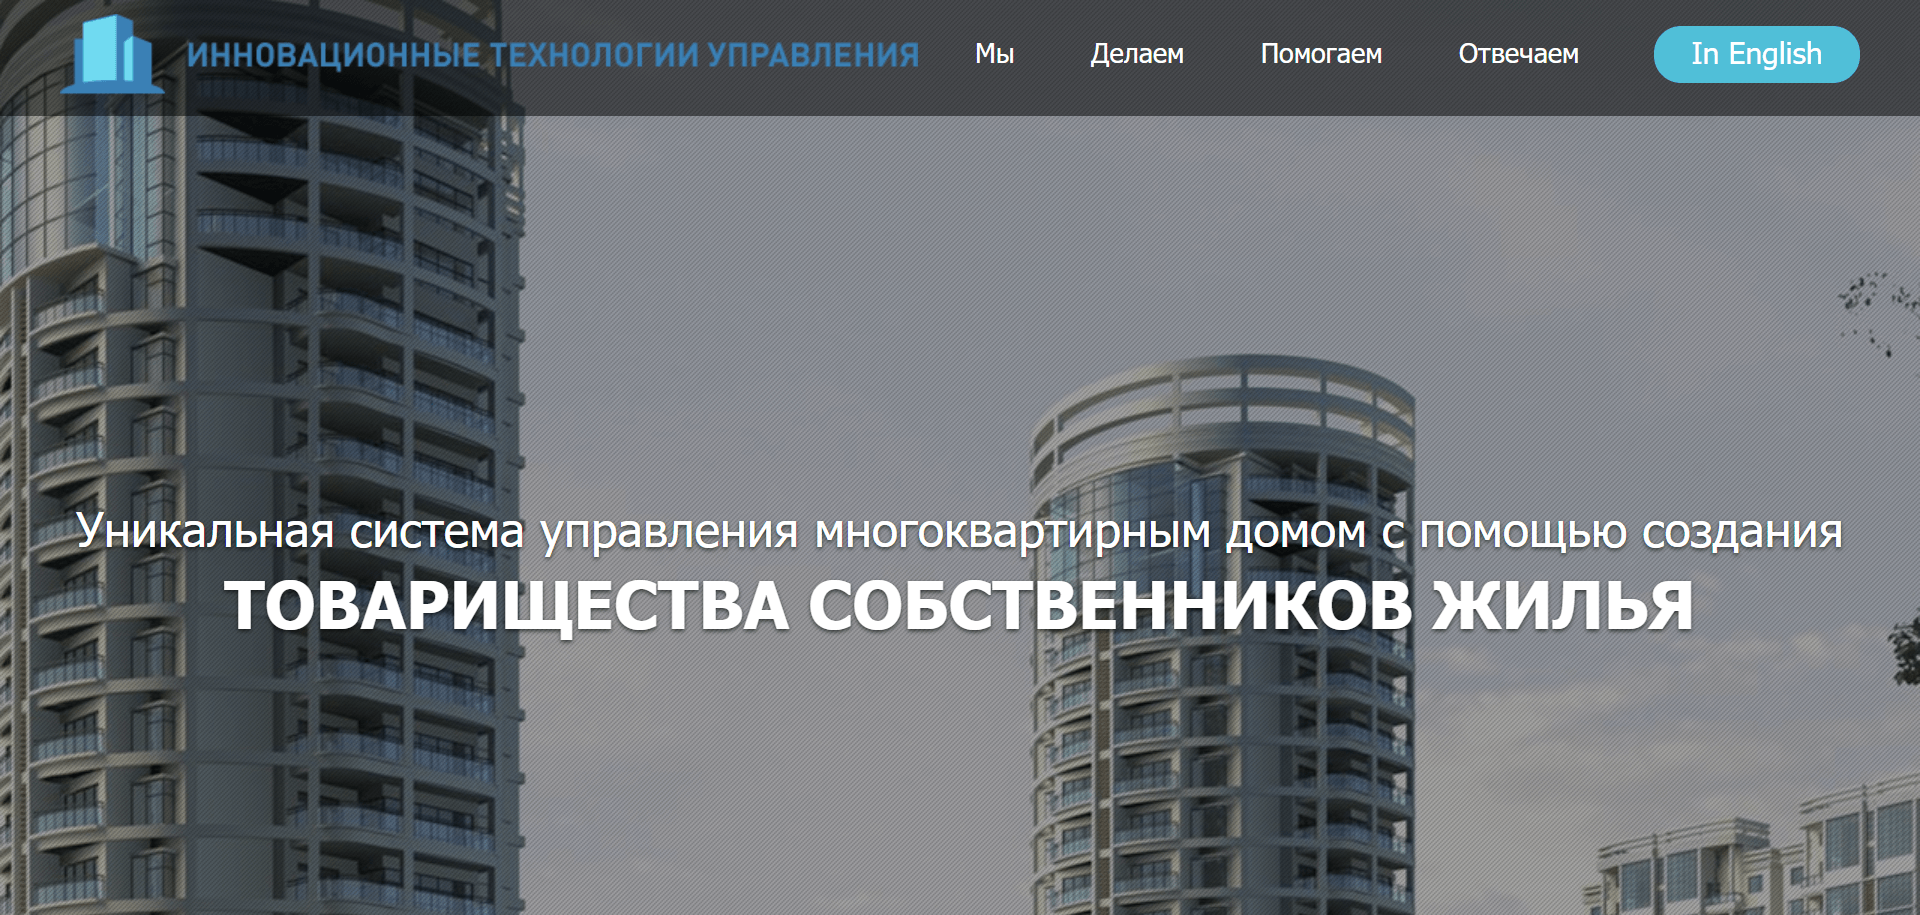 inntu.ru - инновационные технологии управления